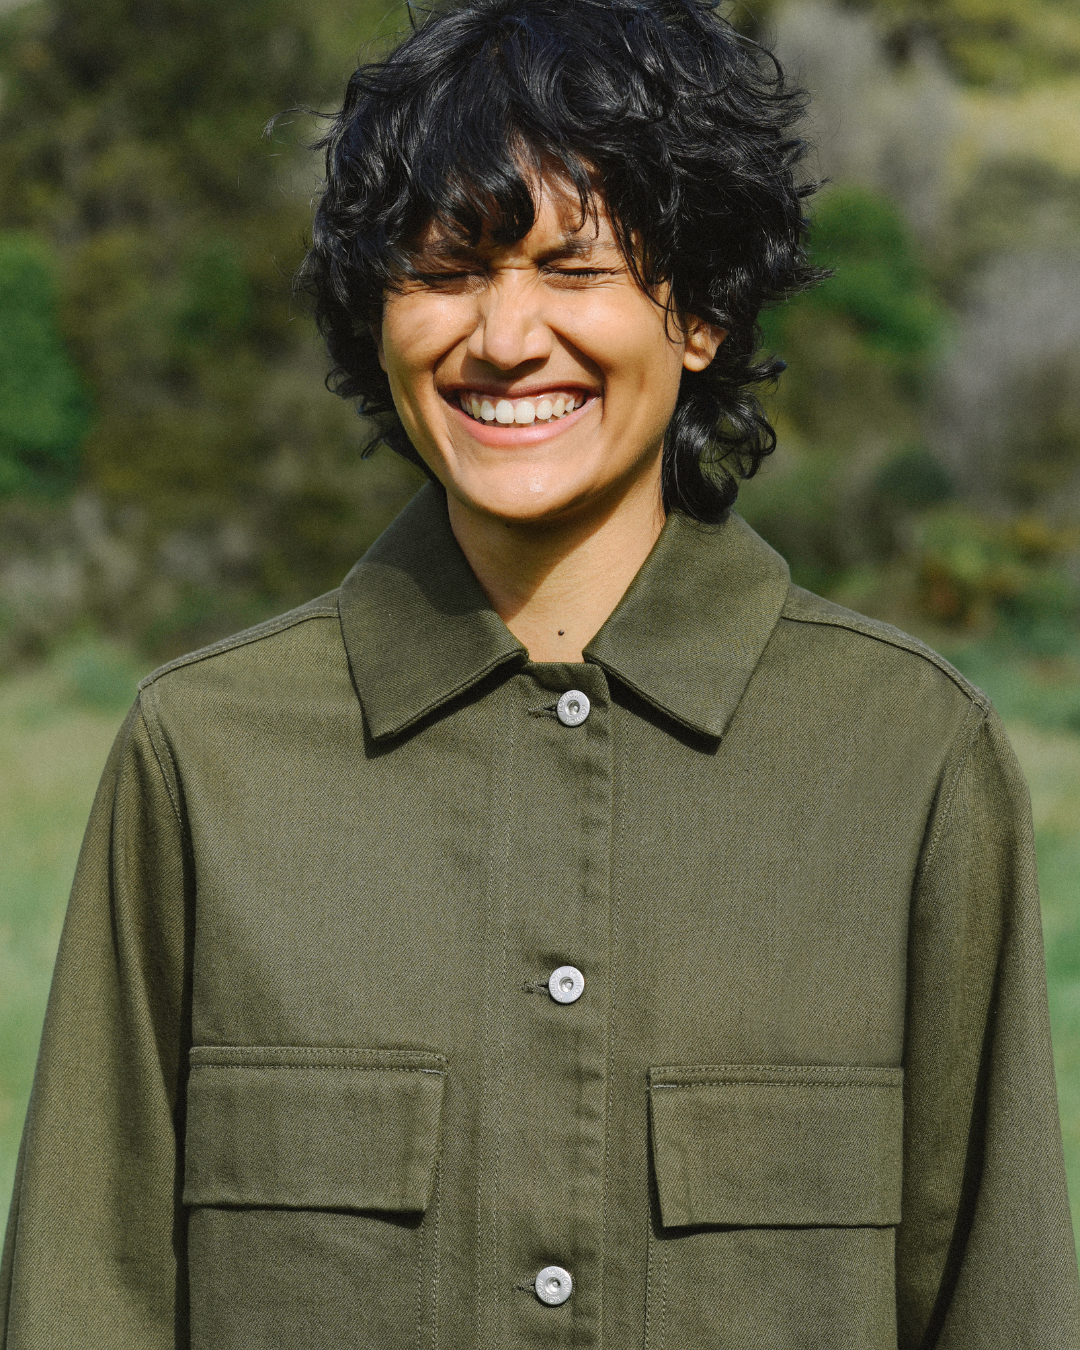 Woman smiling wearing green jacket